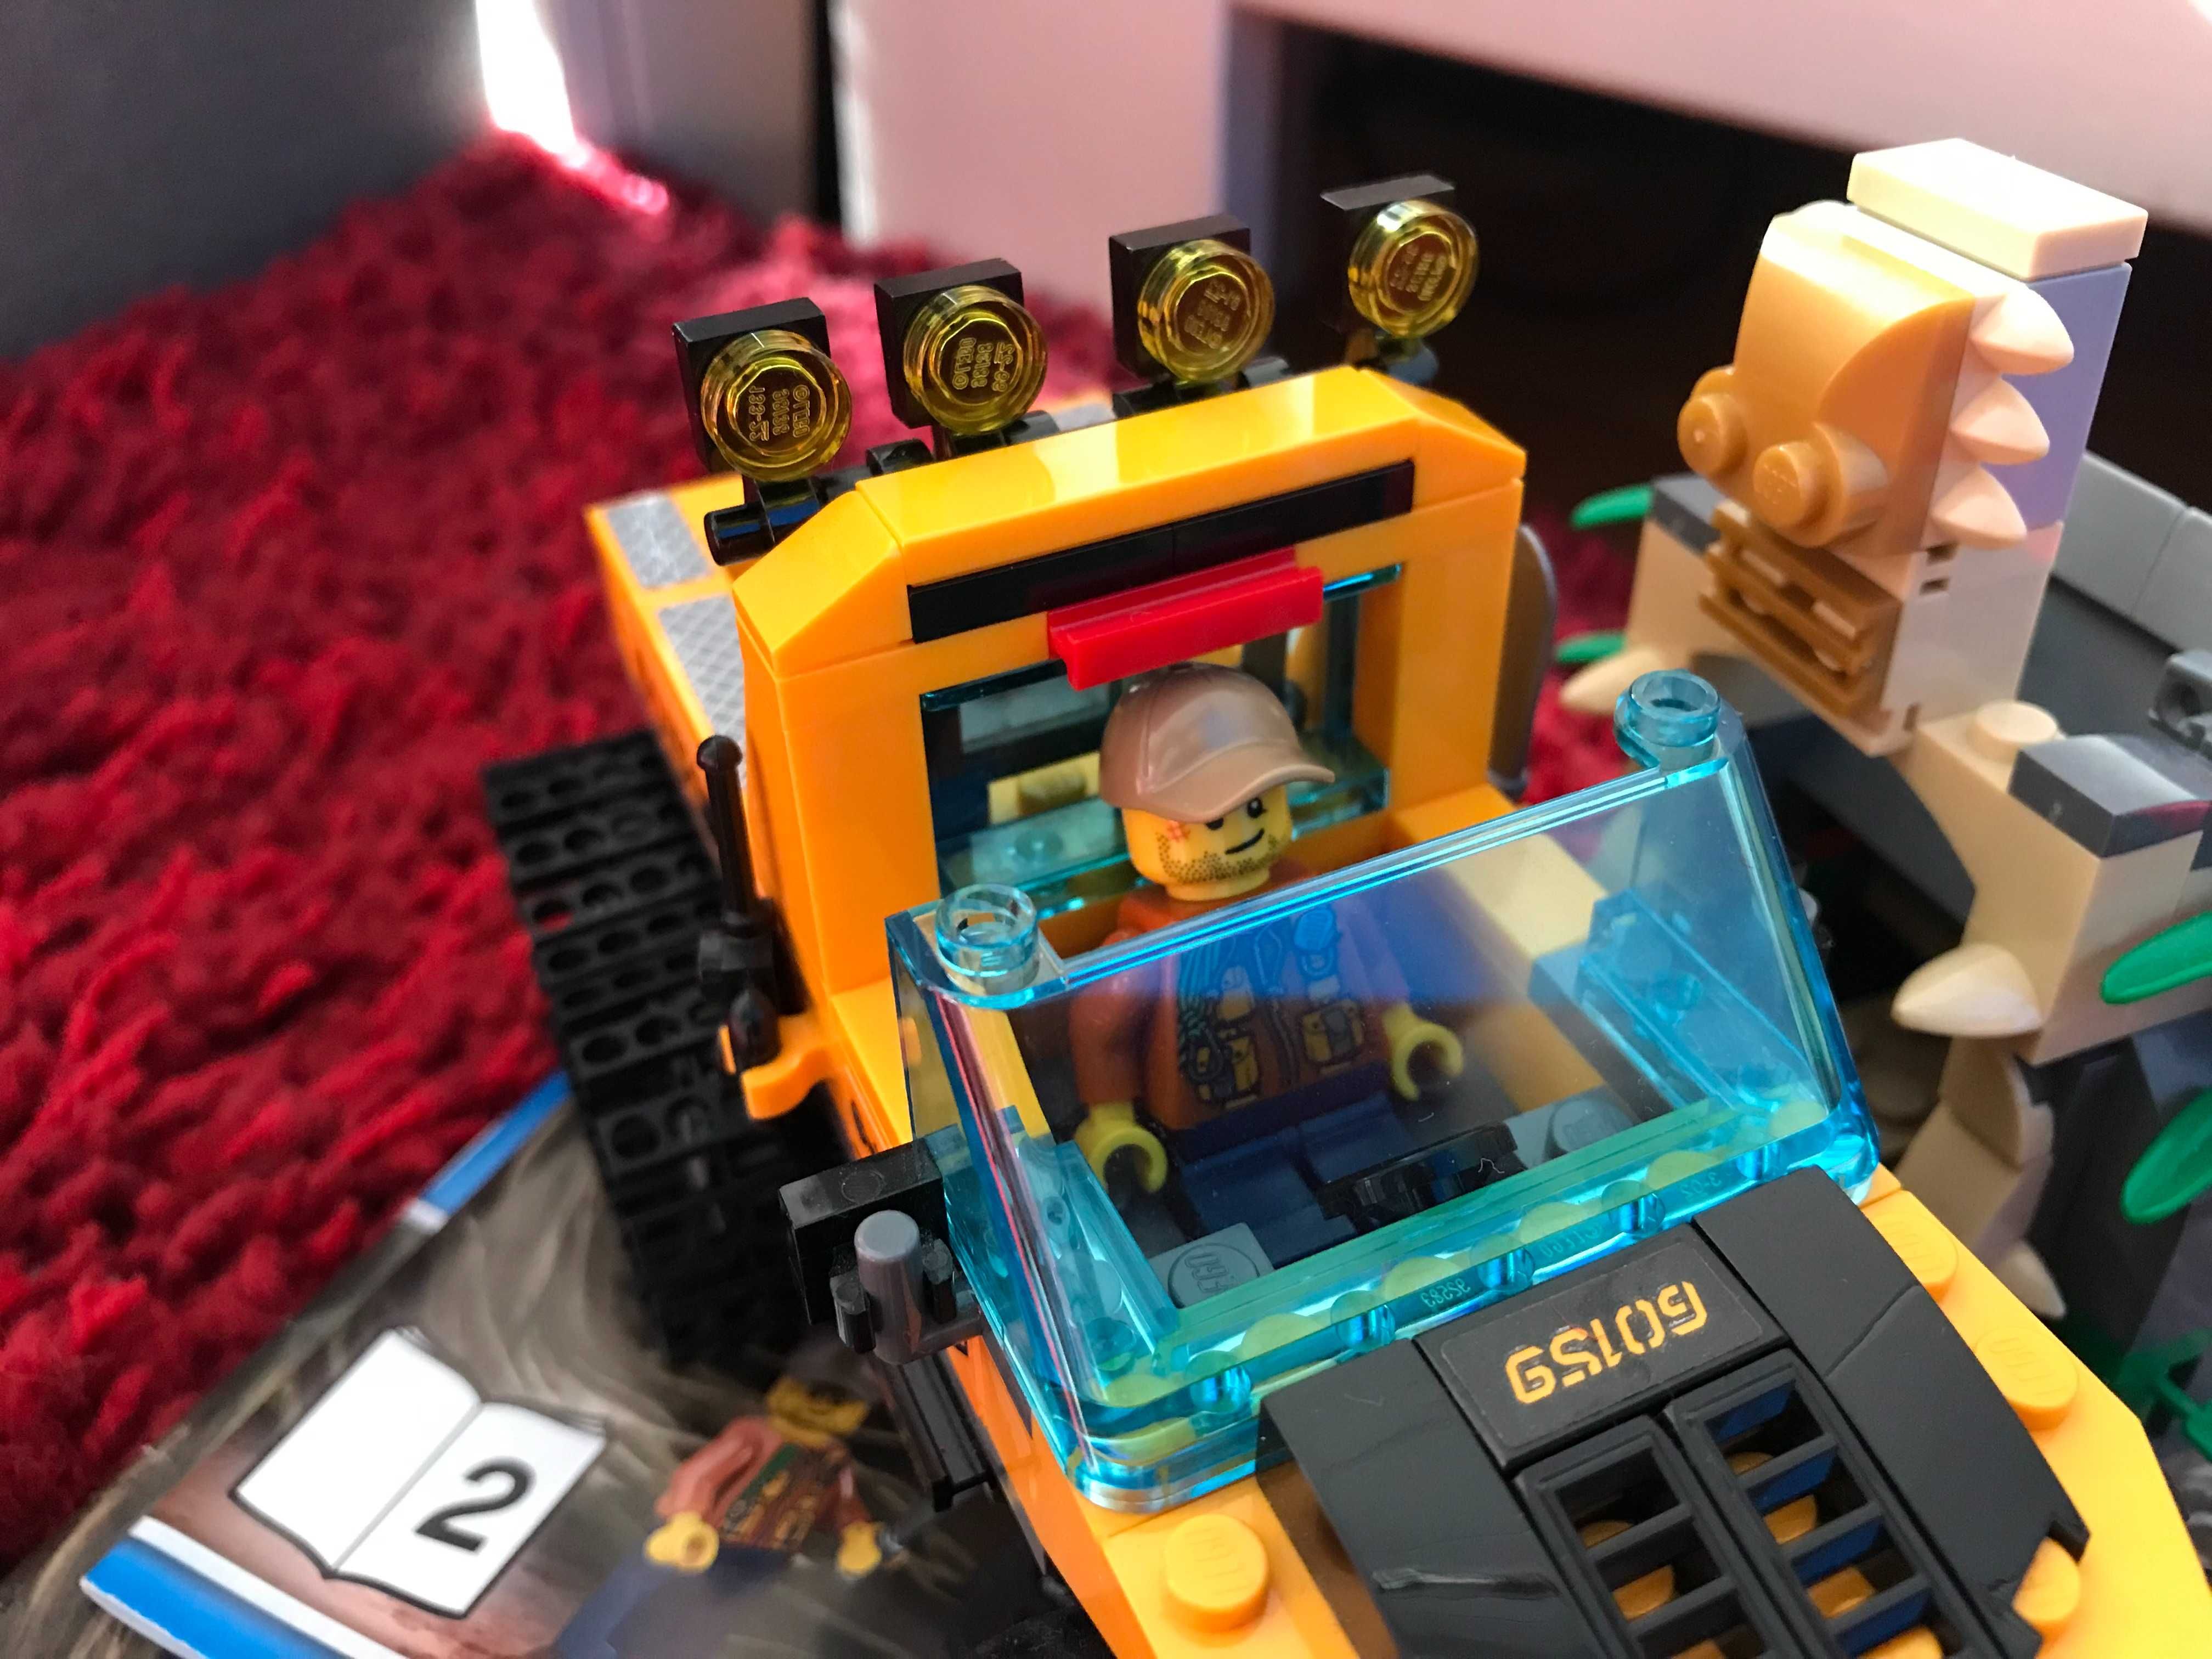 LEGO City 60159 Jungle Explorers Misja półgąsienicowej terenówki